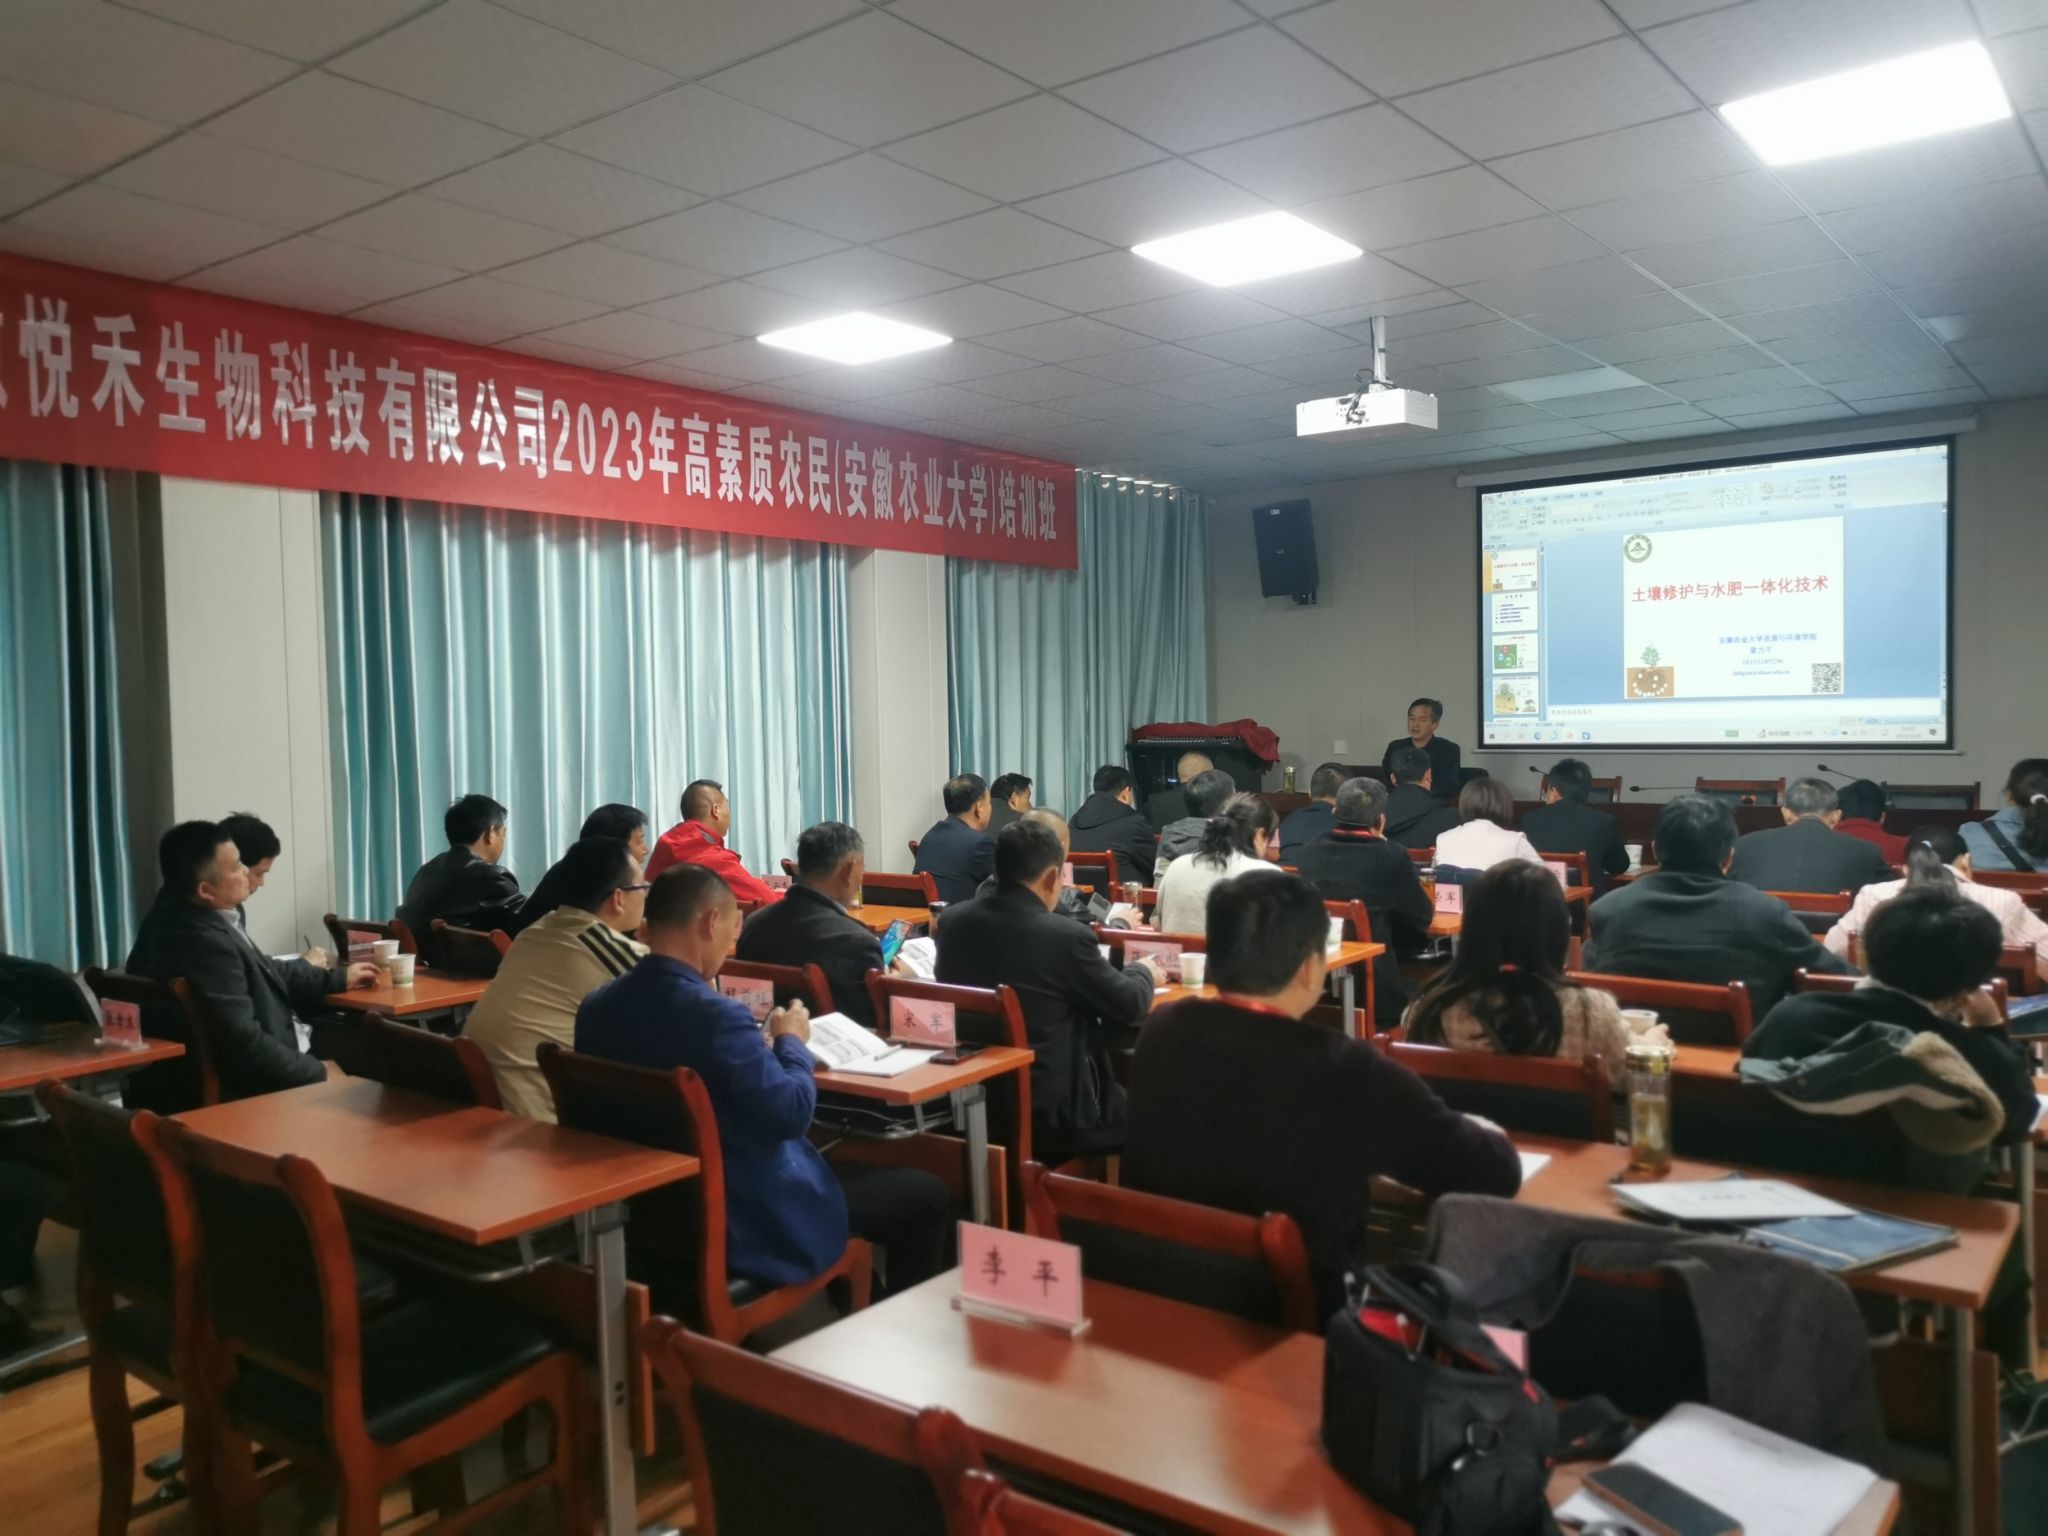 安徽悦禾生物科技有限公司高素质农民培训班在我校举办